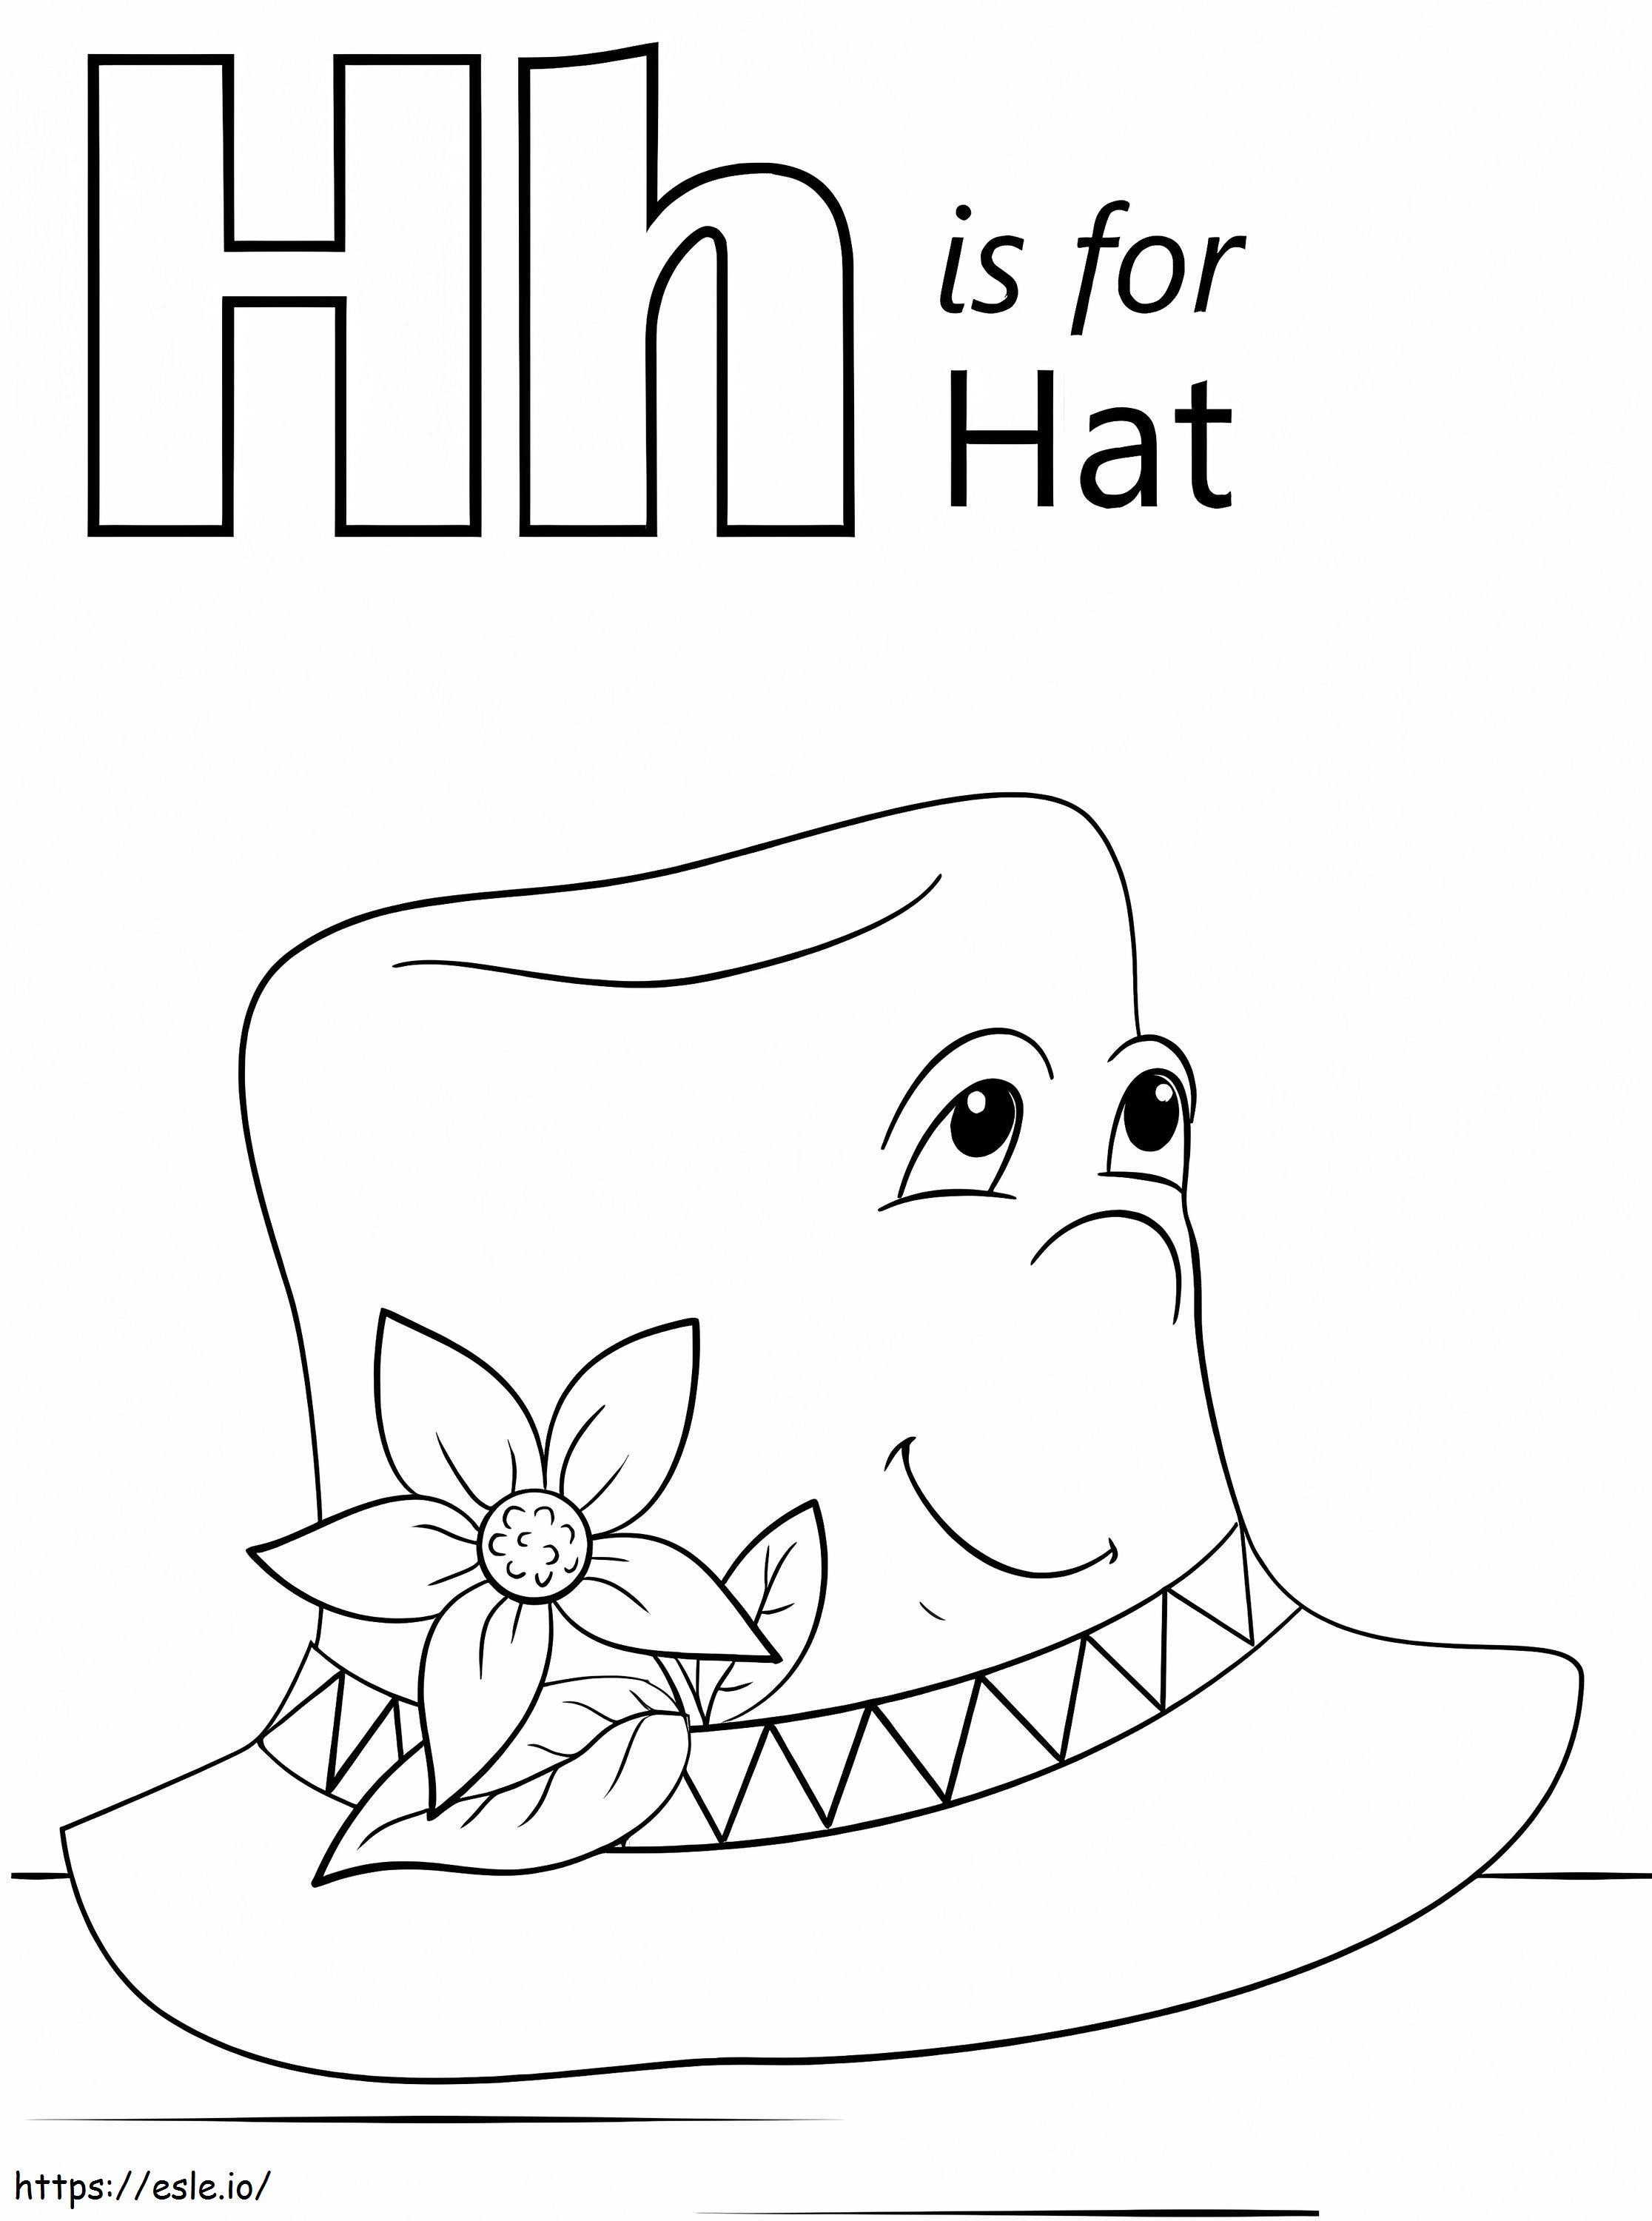 Hutbuchstabe H ausmalbilder